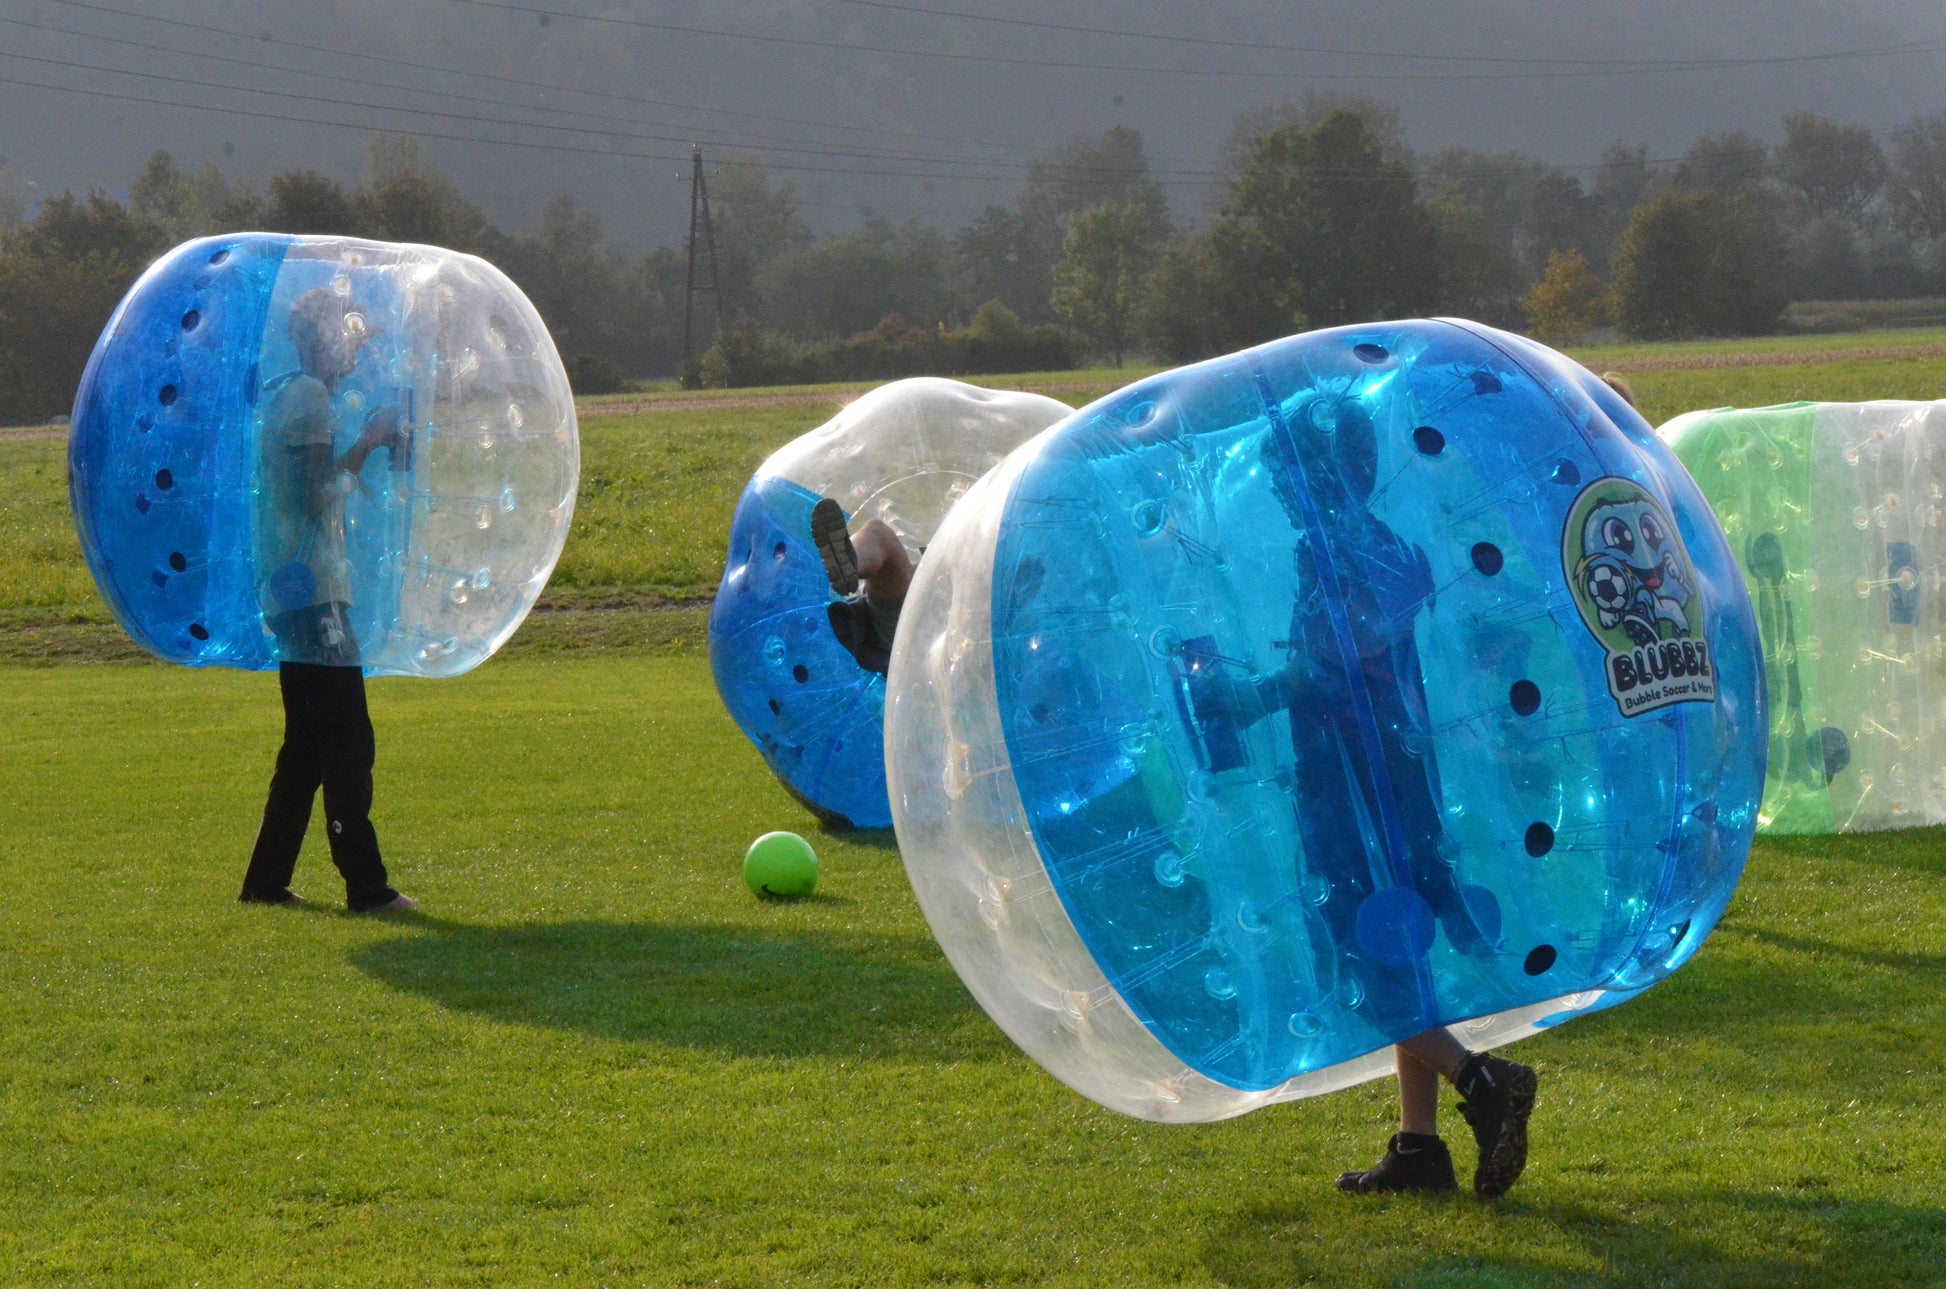 Bubble Soccer am Sportplatz Pettnau, Tirol, Österreich. Momentaufnahme von mehreren Fußballspielern